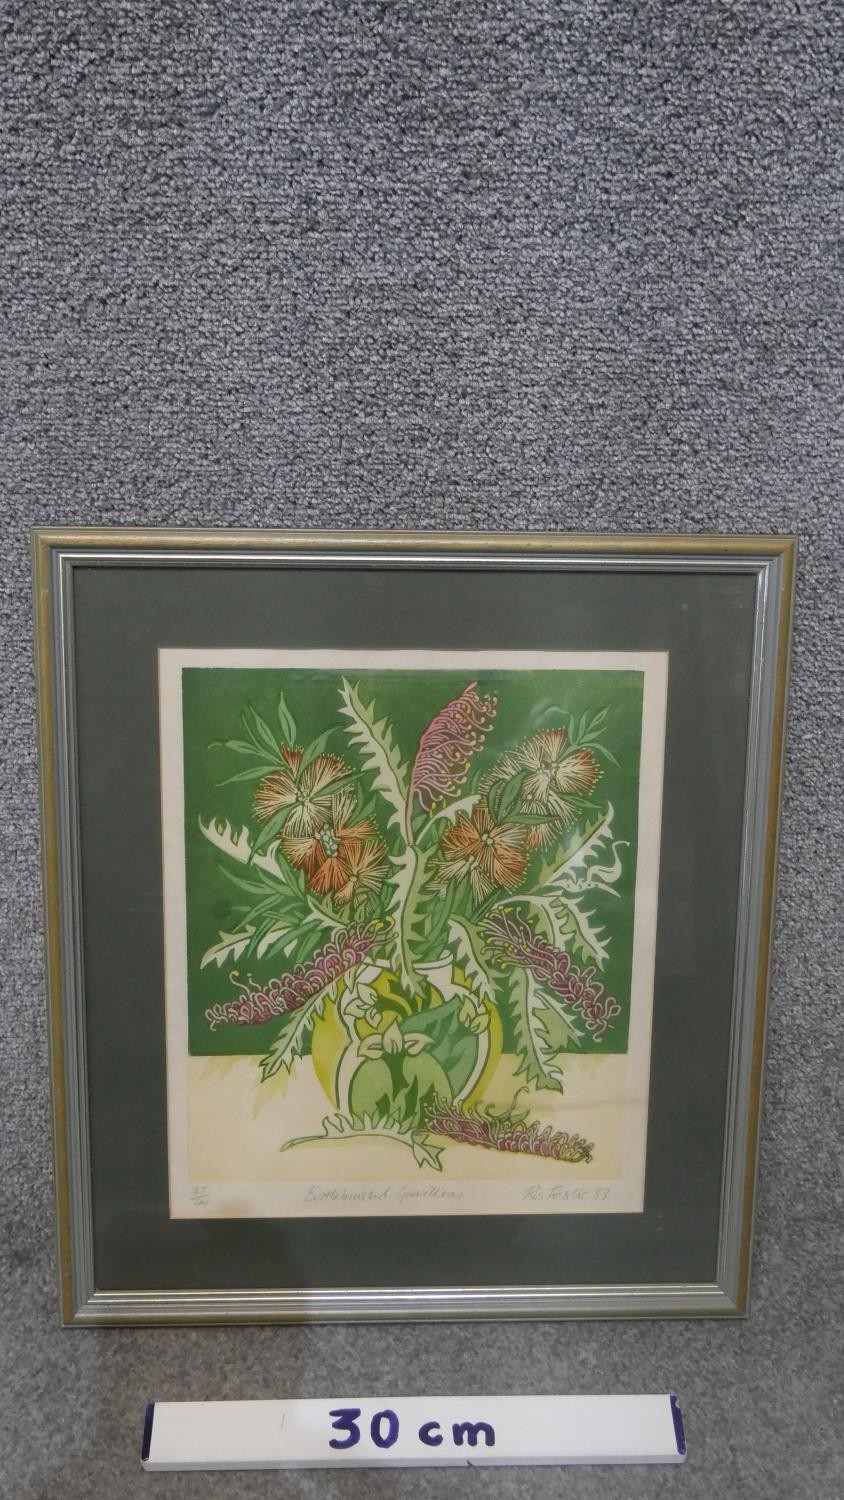 Rosalind Forster- A framed and glazed signed botanical linocut print titled 'Bottlebrush and - Image 3 of 5